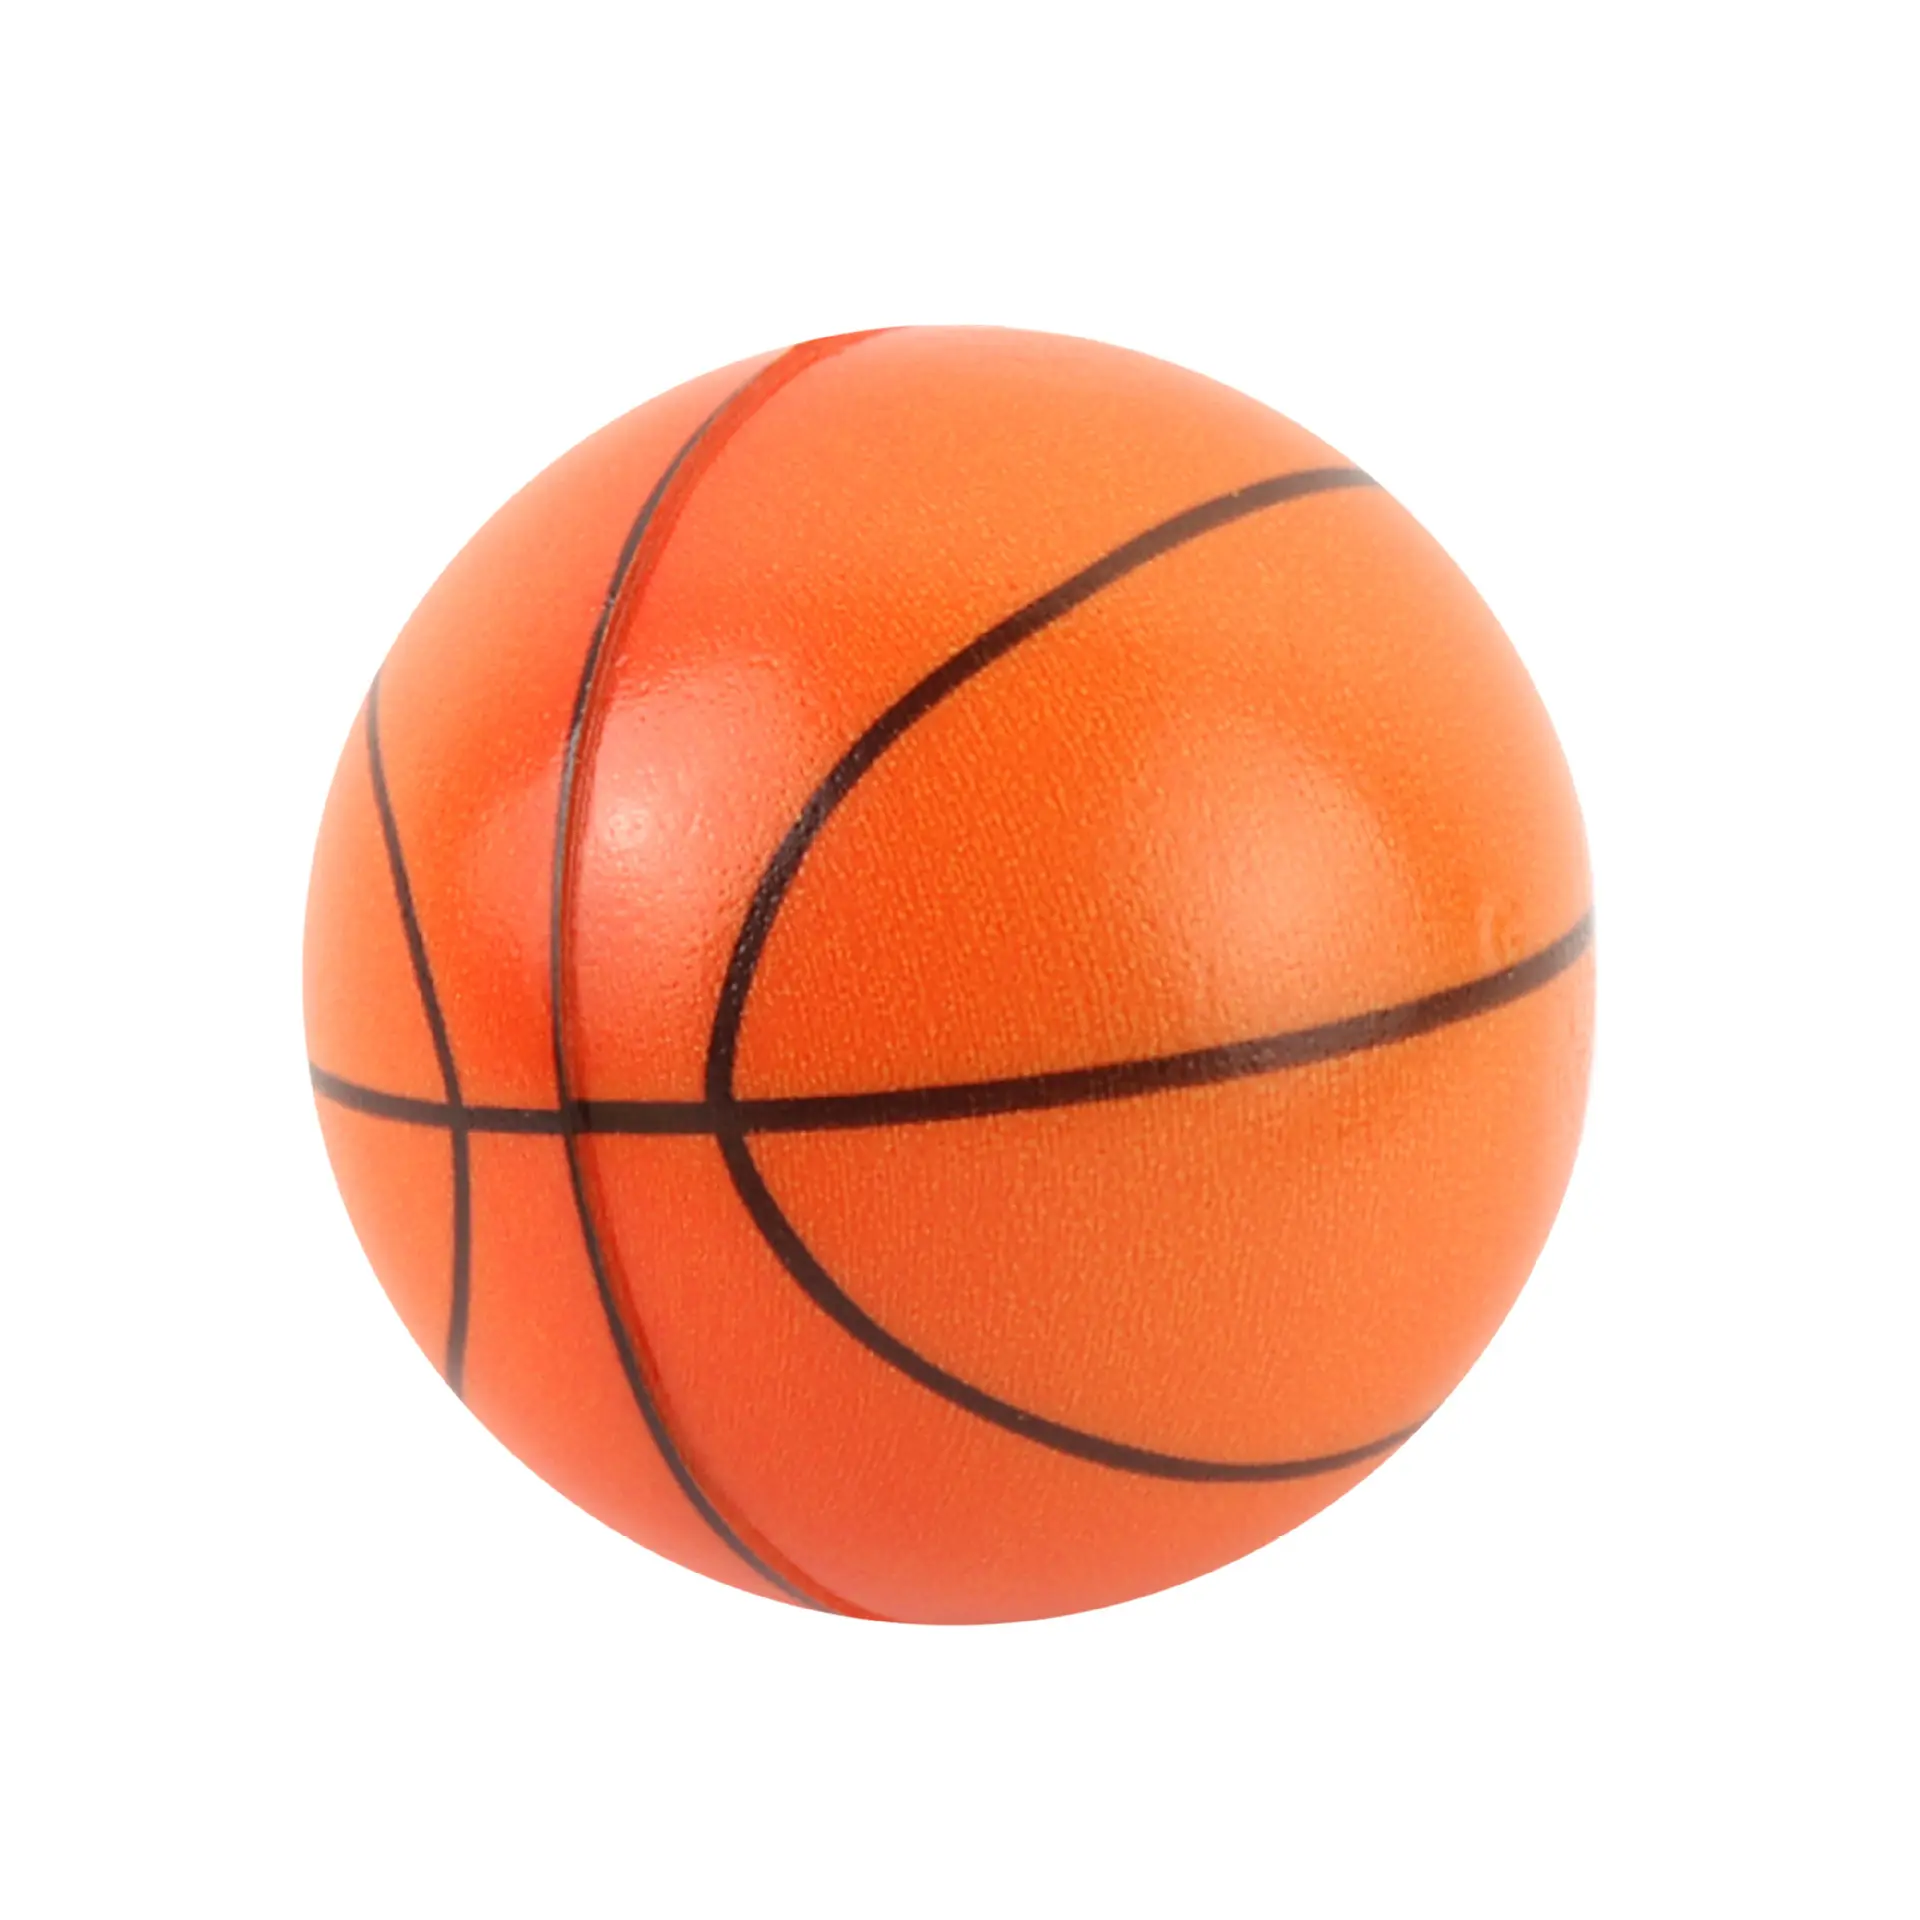 63mm PU bọt thể thao căng thẳng bóng PU bóng đá bóng rổ quần vợt bóng chày đồ chơi cho trẻ em Quà tặng khuyến mãi bóng chấp nhận biểu tượng tùy chỉnh